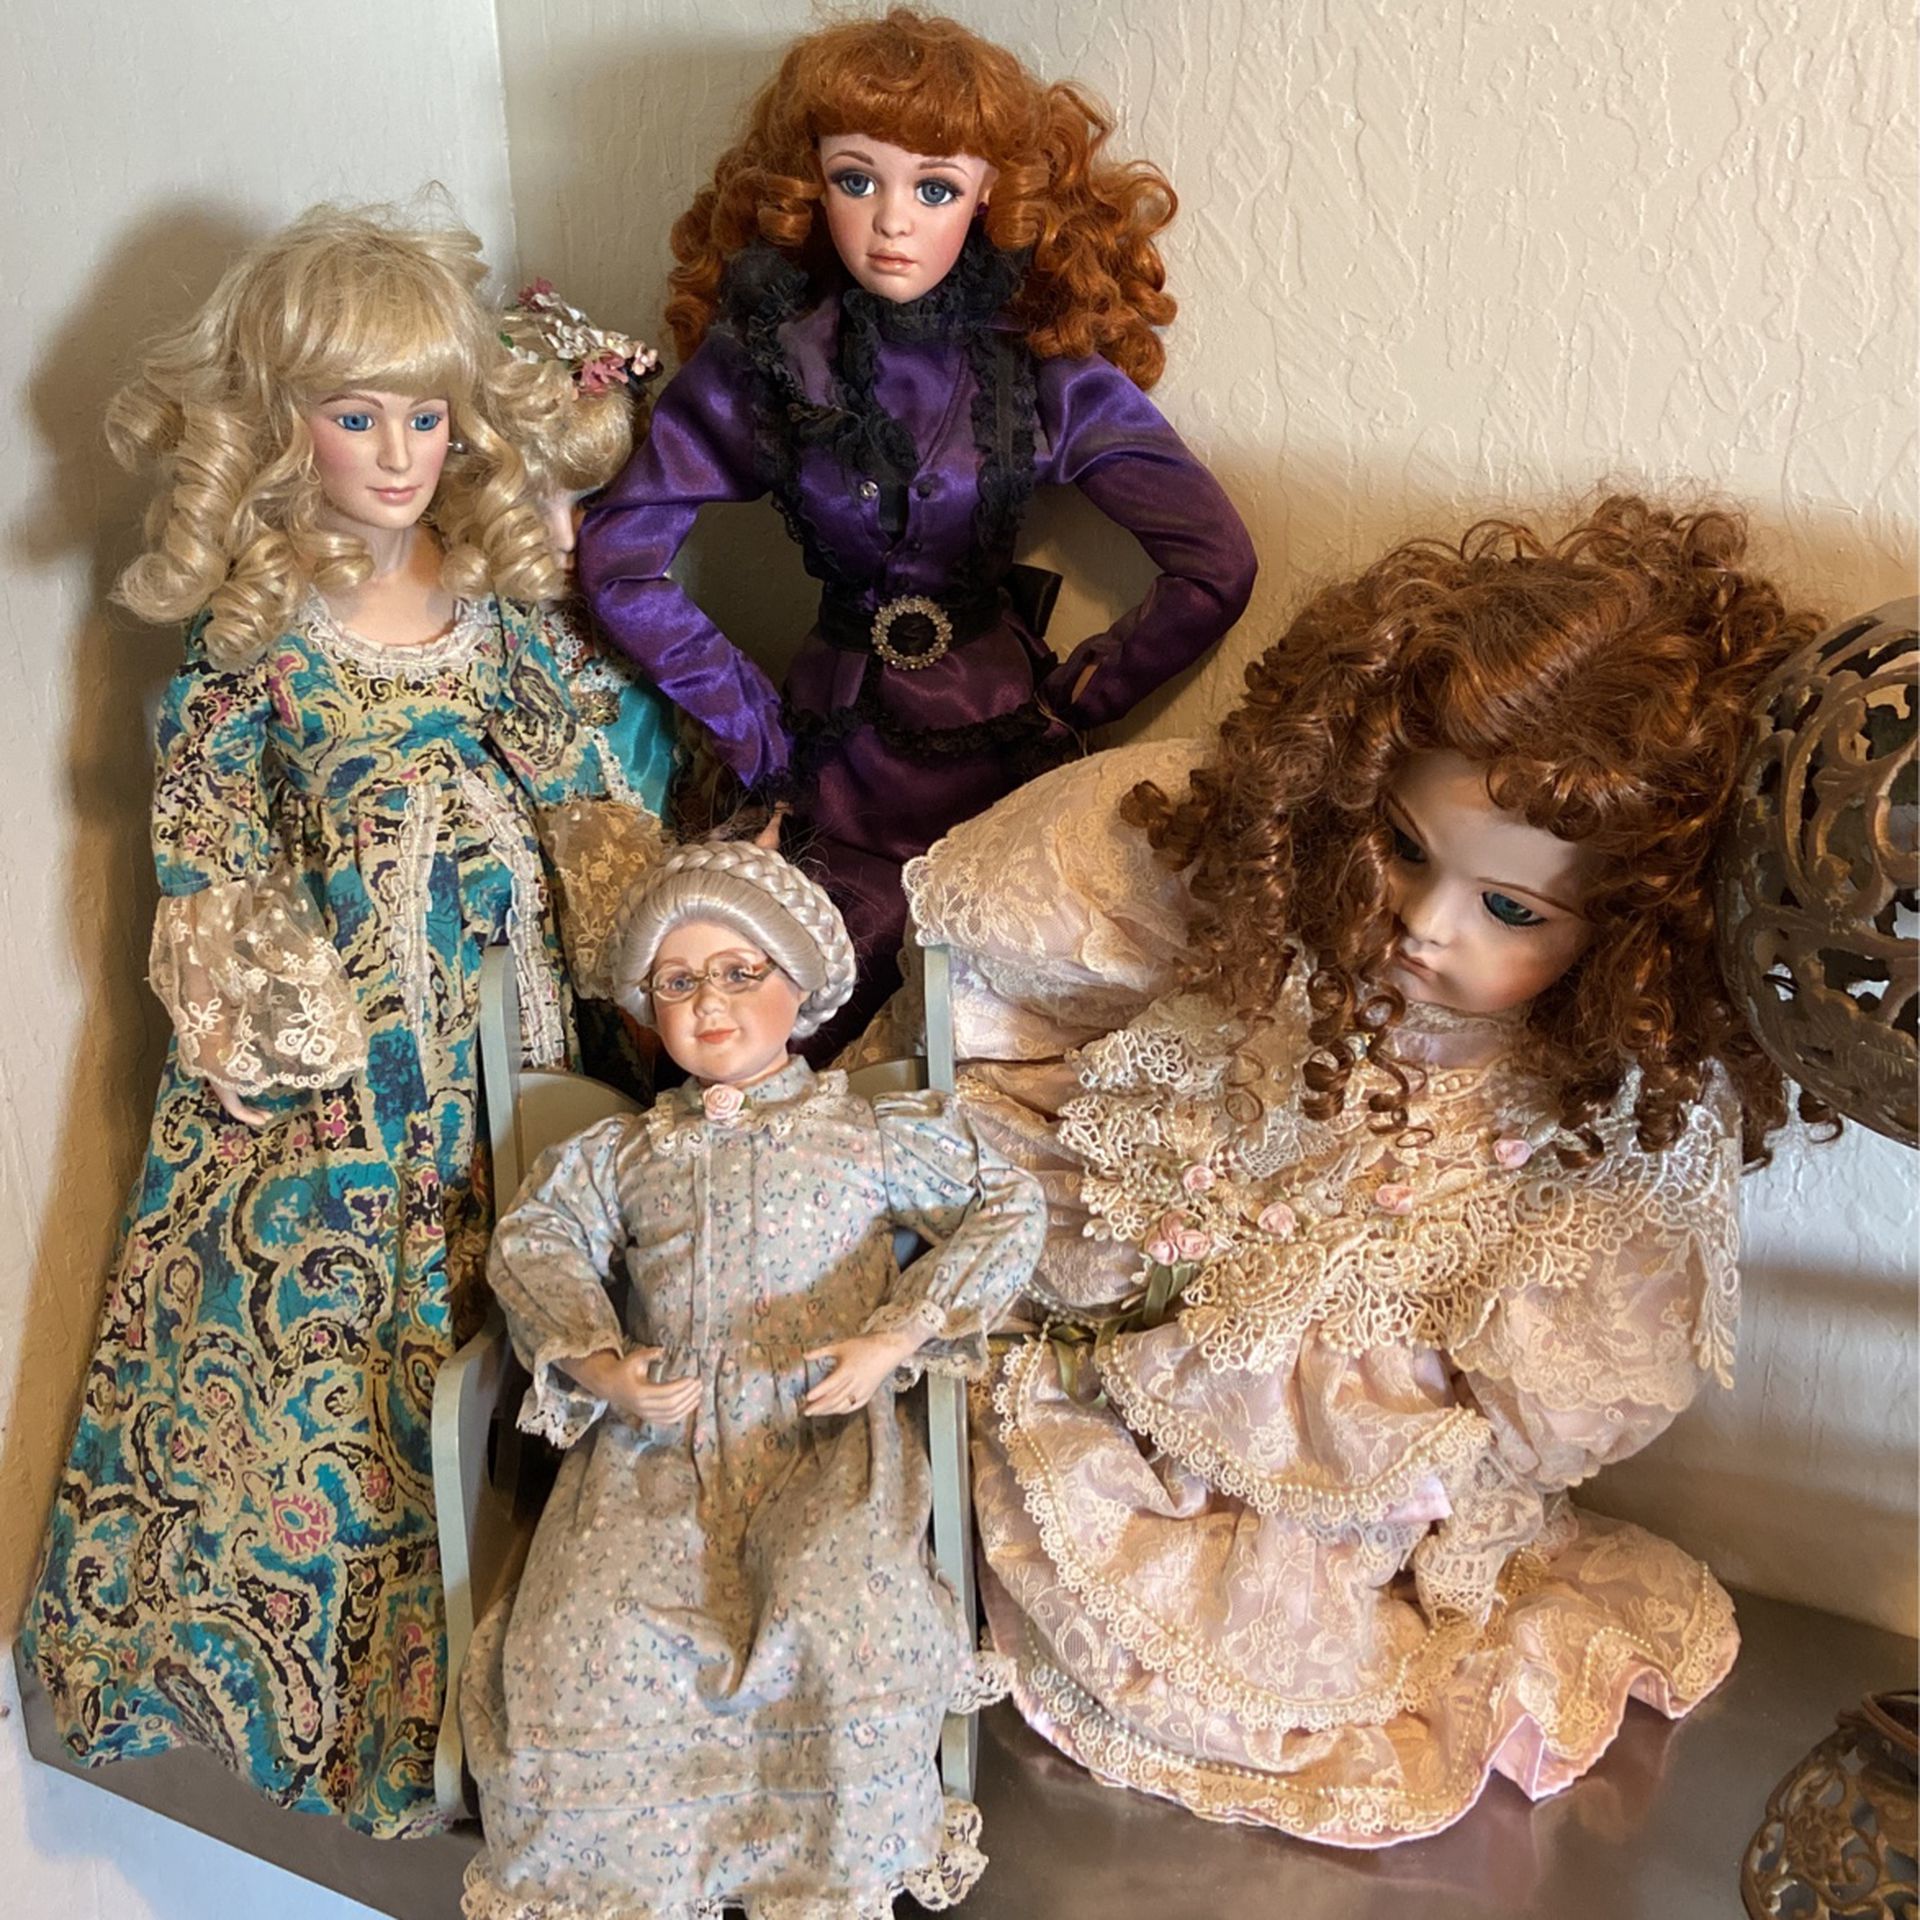 Beautiful vintage dolls